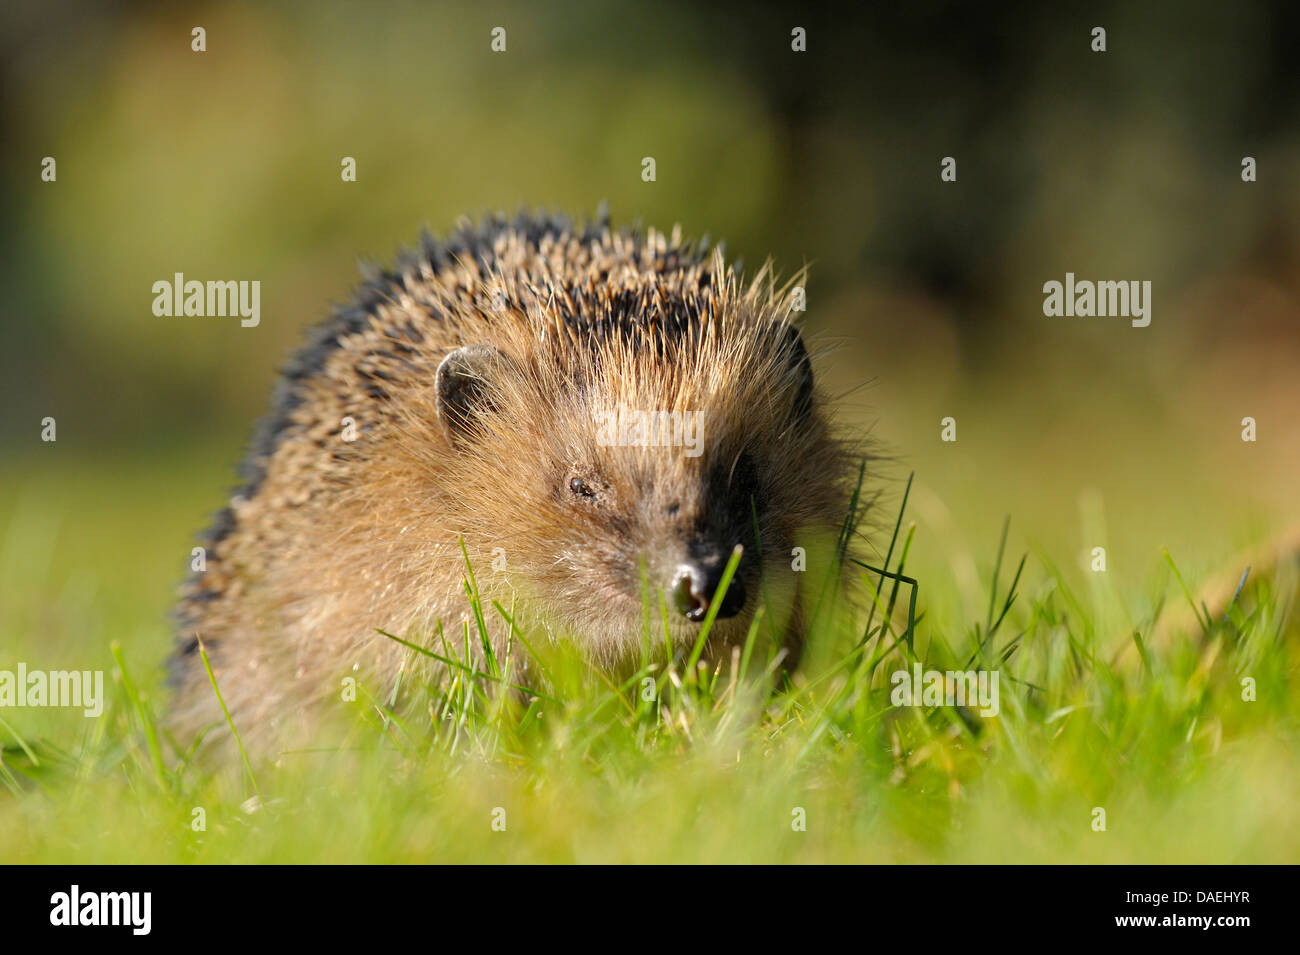 Western hedgehog, European hedgehog (Erinaceus europaeus), searching food in a meadow, Germany, North Rhine-Westphalia Stock Photo